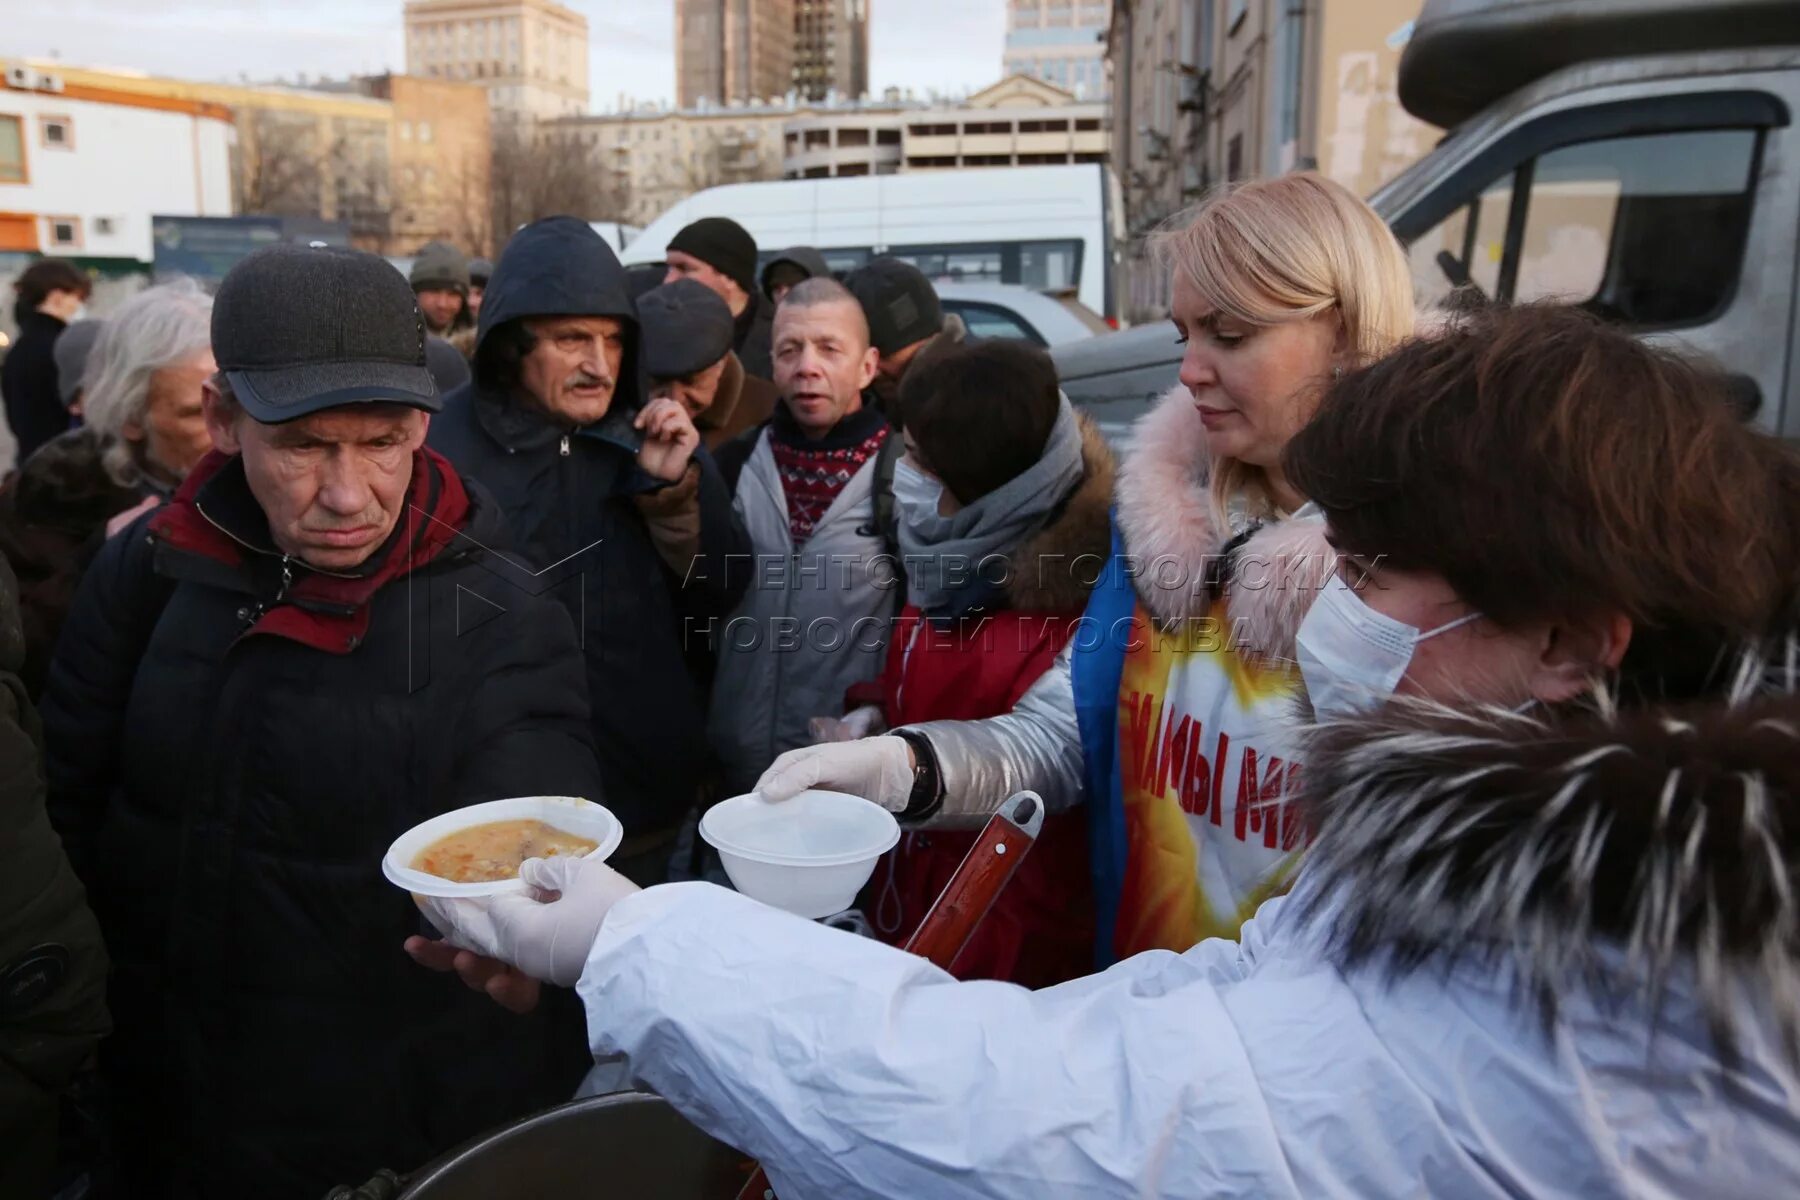 Еда для бездомных. Раздача еды бездомным. Раздают еду бездомным. Выдача еды бездомным.